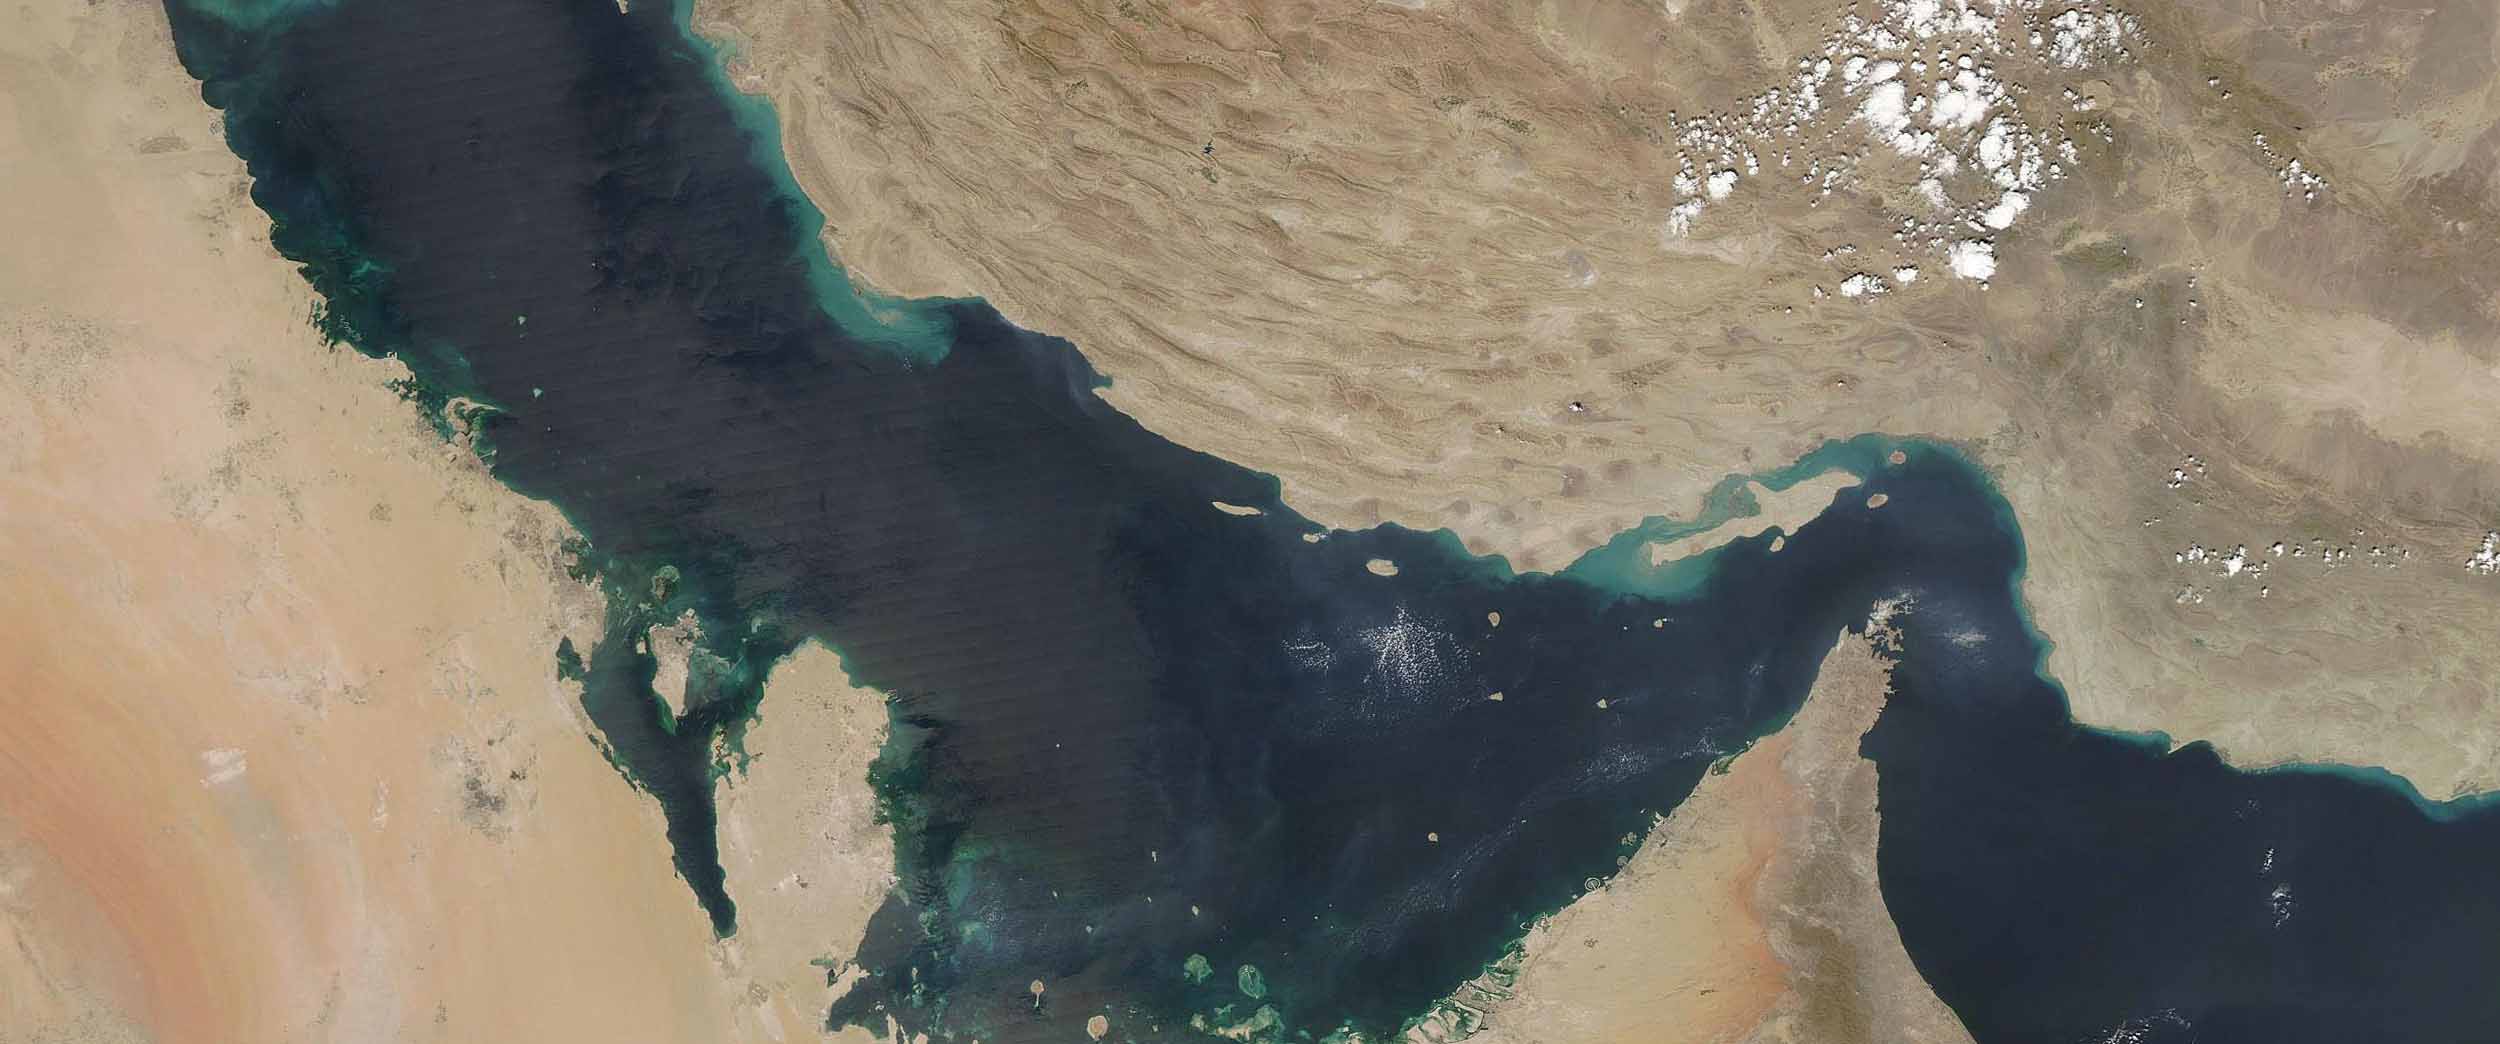 خلیج فارس ایران - شاخص